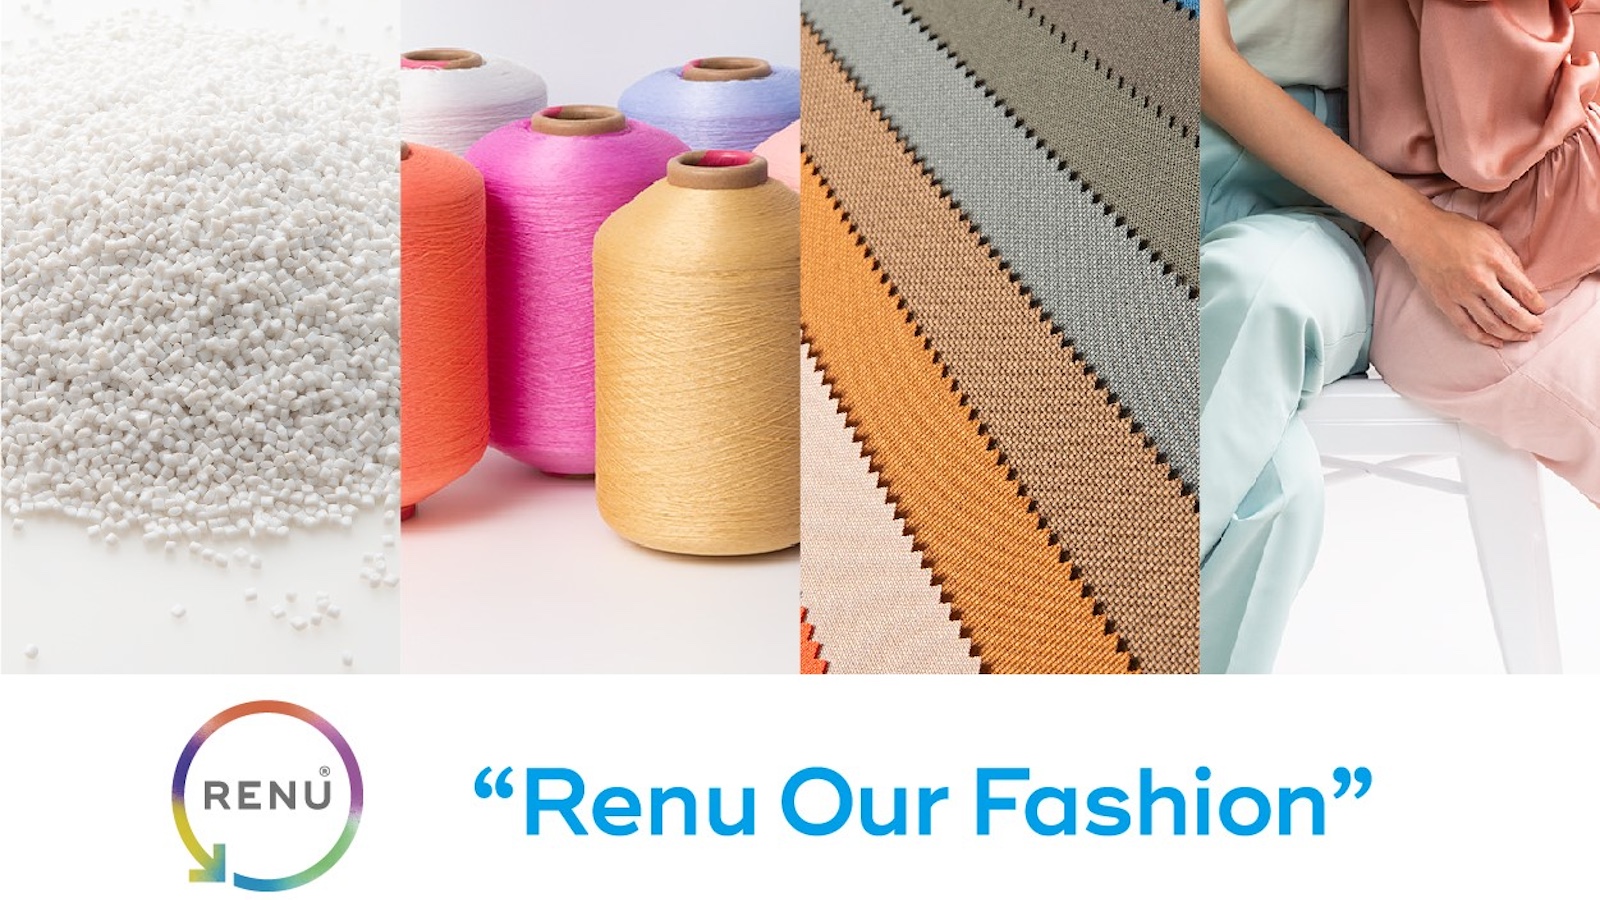 日本発の再生繊維「RENU」が“服の大量廃棄”に終止符を打つ | 理想は「気になった服がサステナブルなものだった」【PR】